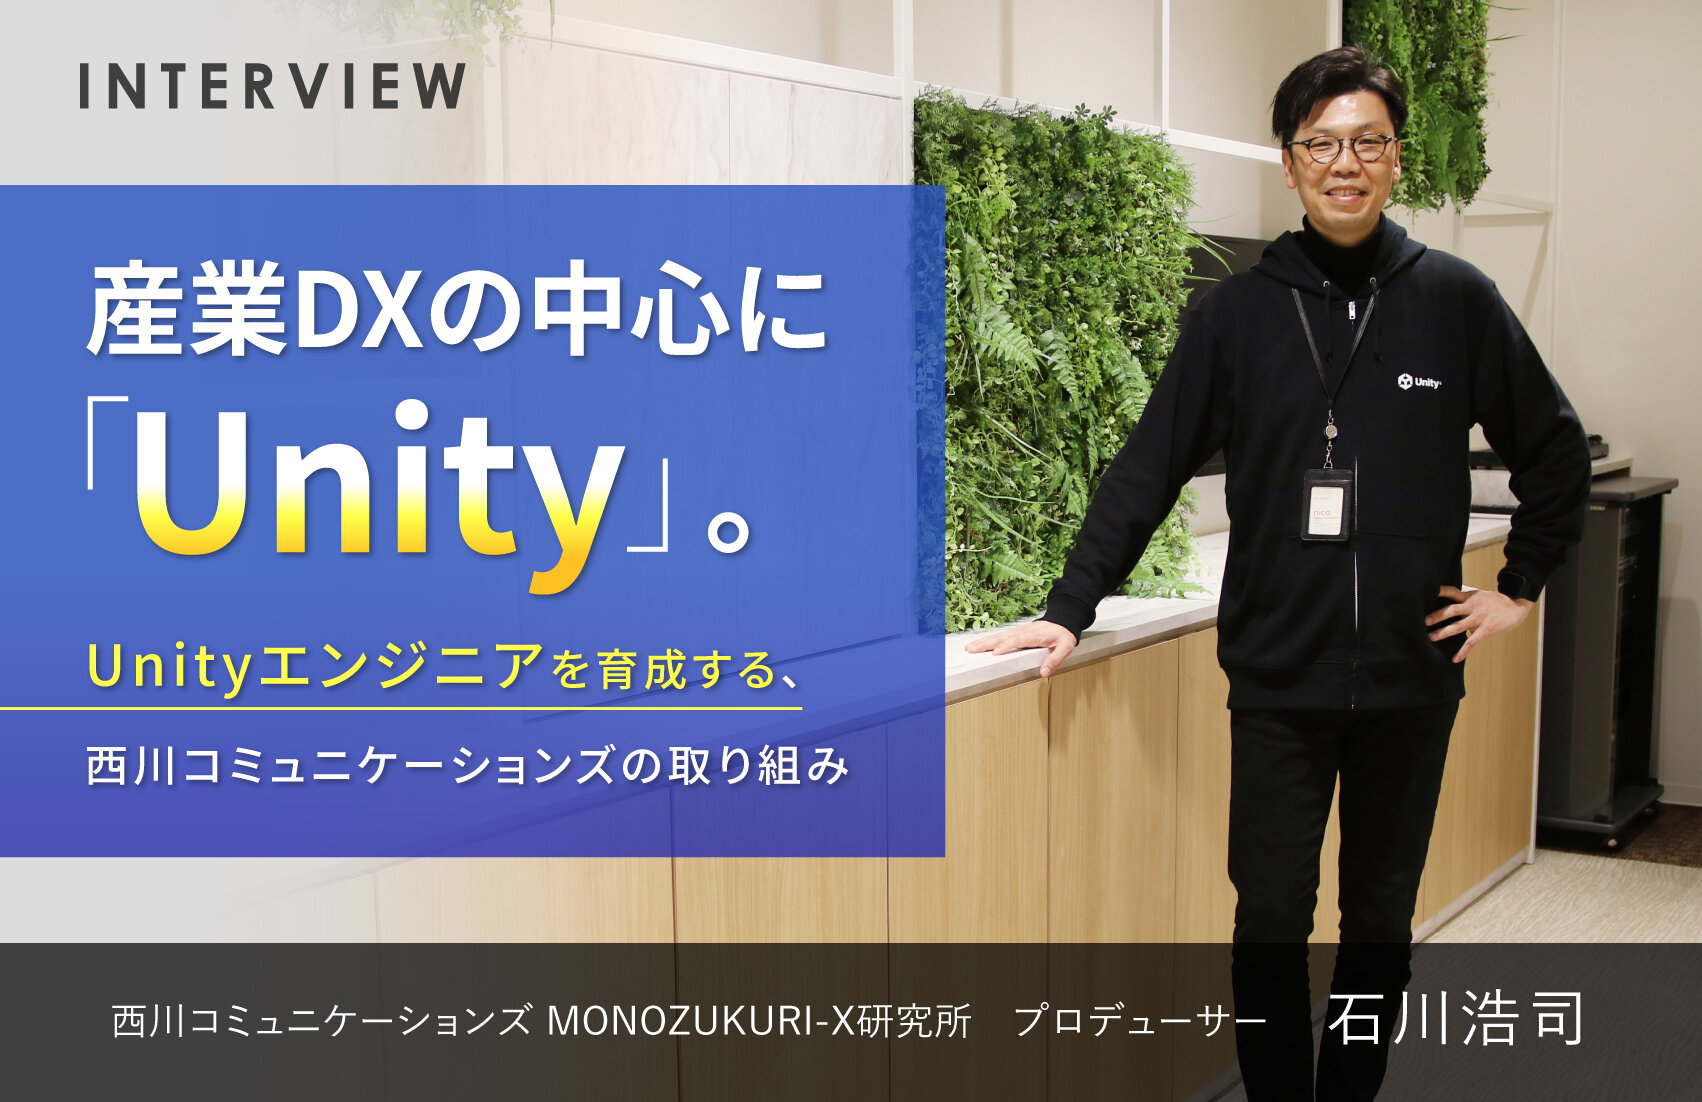 産業DXの中心に「Unity」。Unityエンジニアを育成する、西川コミュニケーションズの取り組み